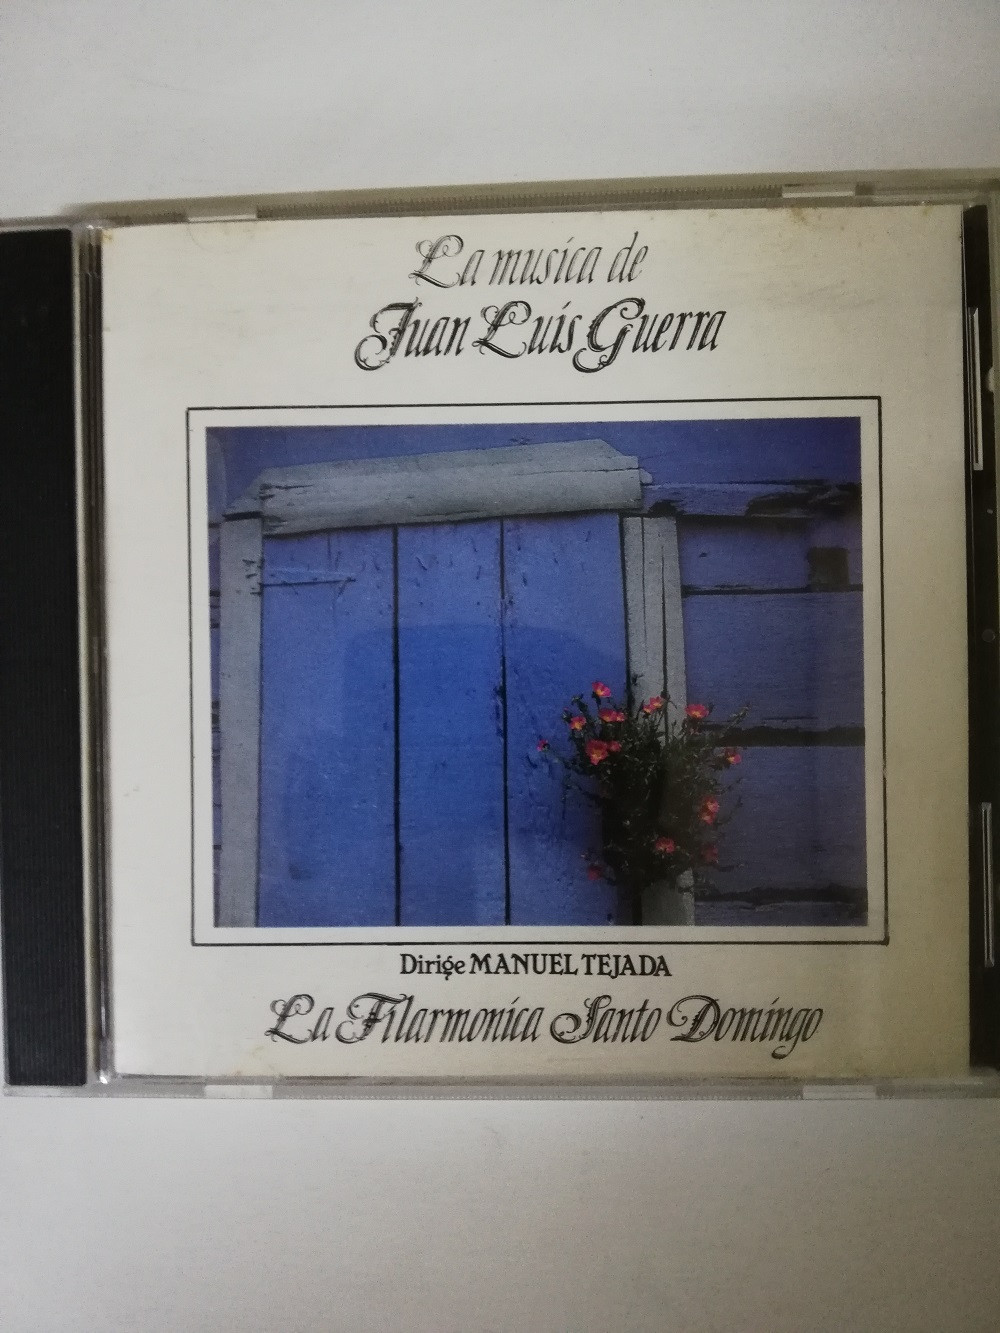 Imagen CD JUAN LUIS GUERRA - LA MÚSICA DE JUAN LUIS GUERRA CON LA FILARMONICA SANTO DOMINGO